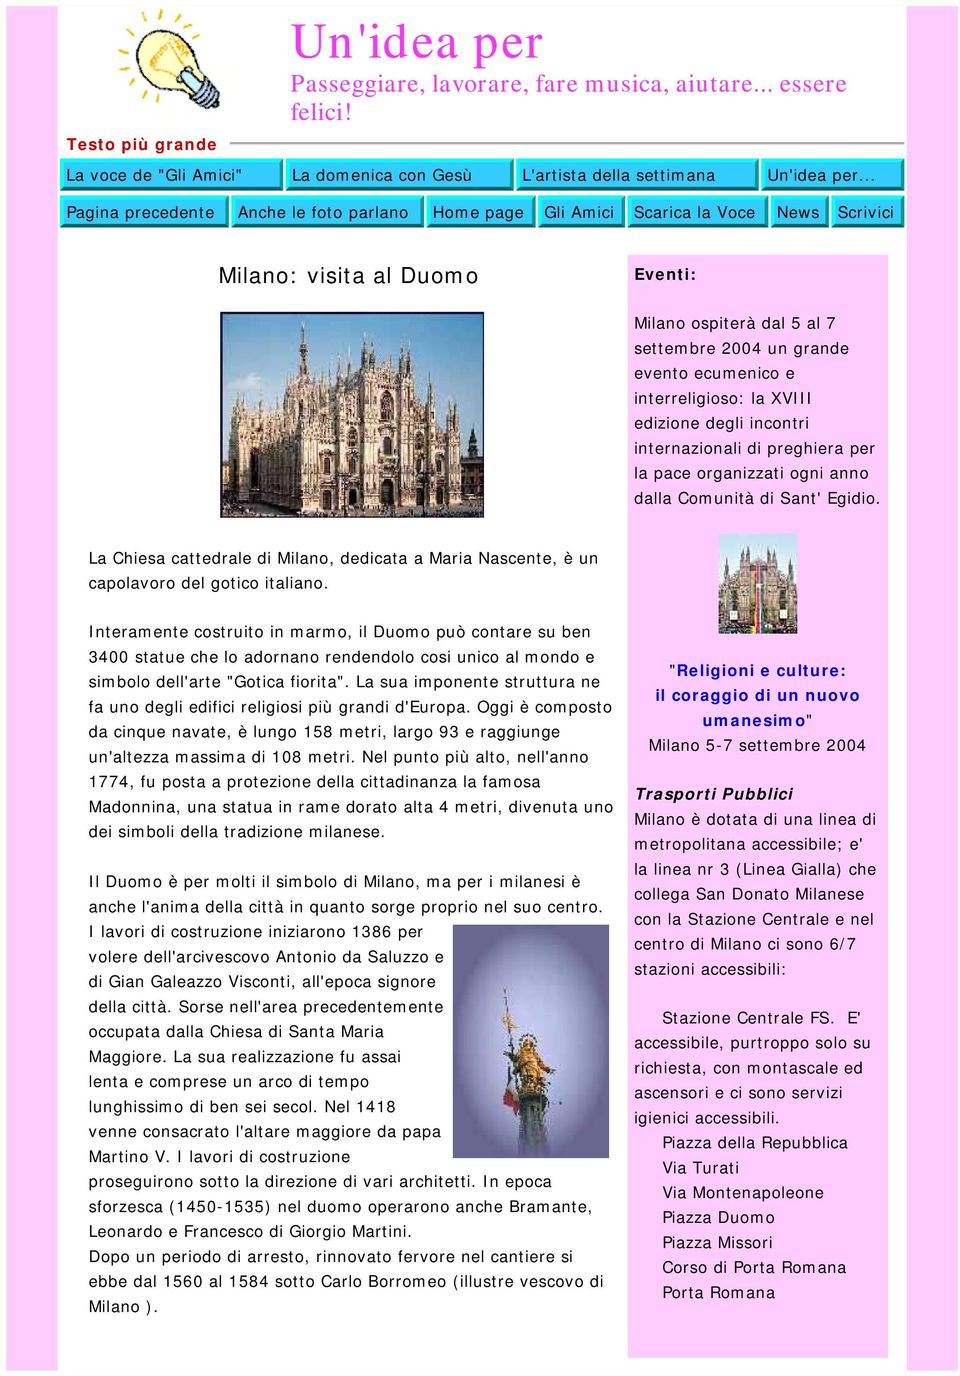 interreligioso: la XVIII edizione degli incontri internazionali di preghiera per la pace organizzati ogni anno dalla Comunità di Sant' Egidio.